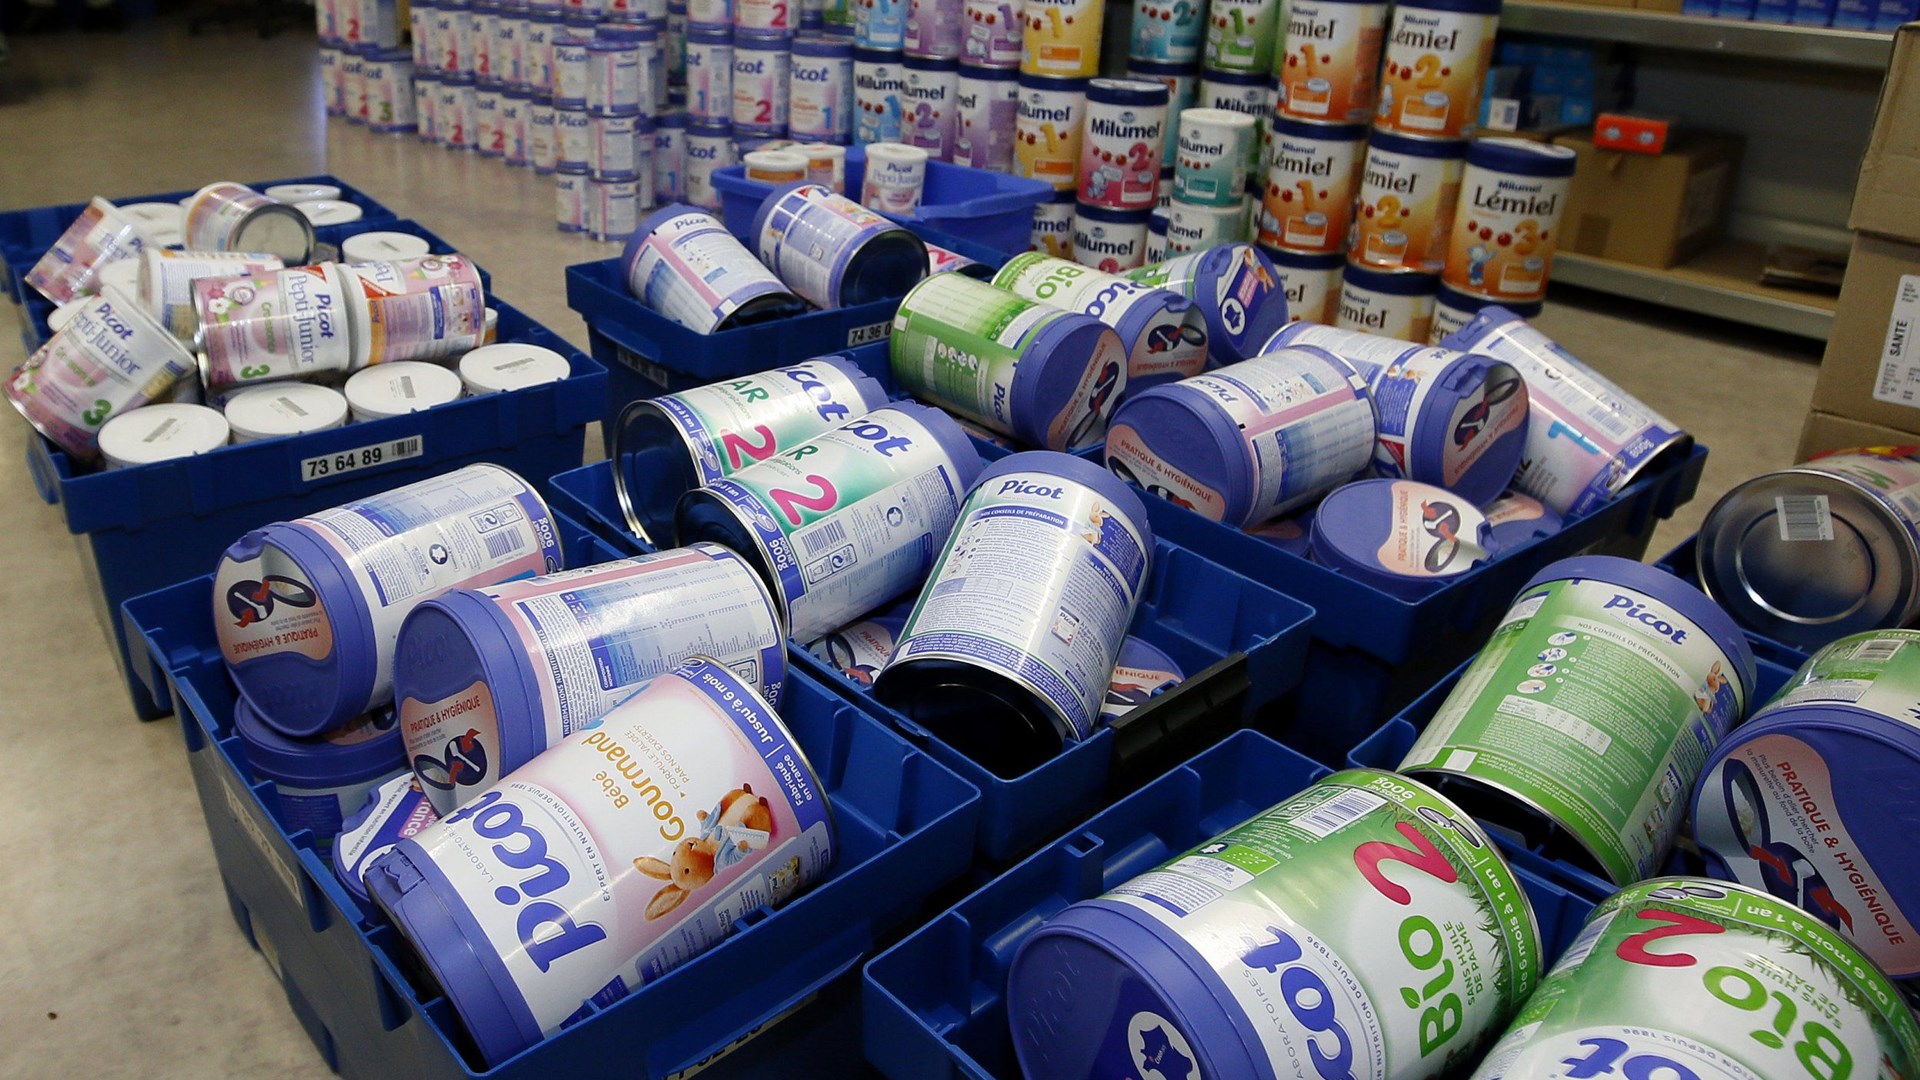 Μολυσμένο βρεφικό γάλα: 83 χώρες αφορά η επιχείρηση ανάκλησης προϊόντων του ομίλου Lactalis